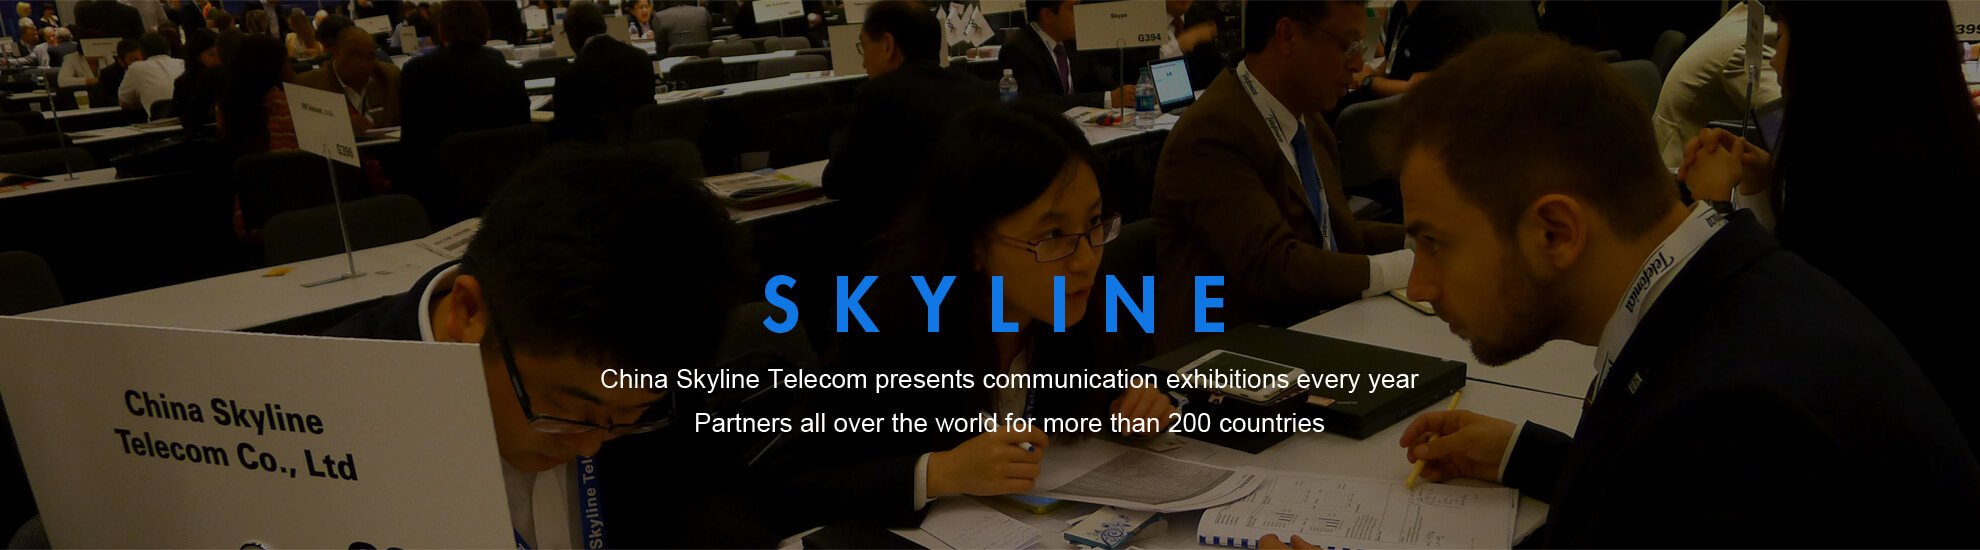 China Skyline Telecom